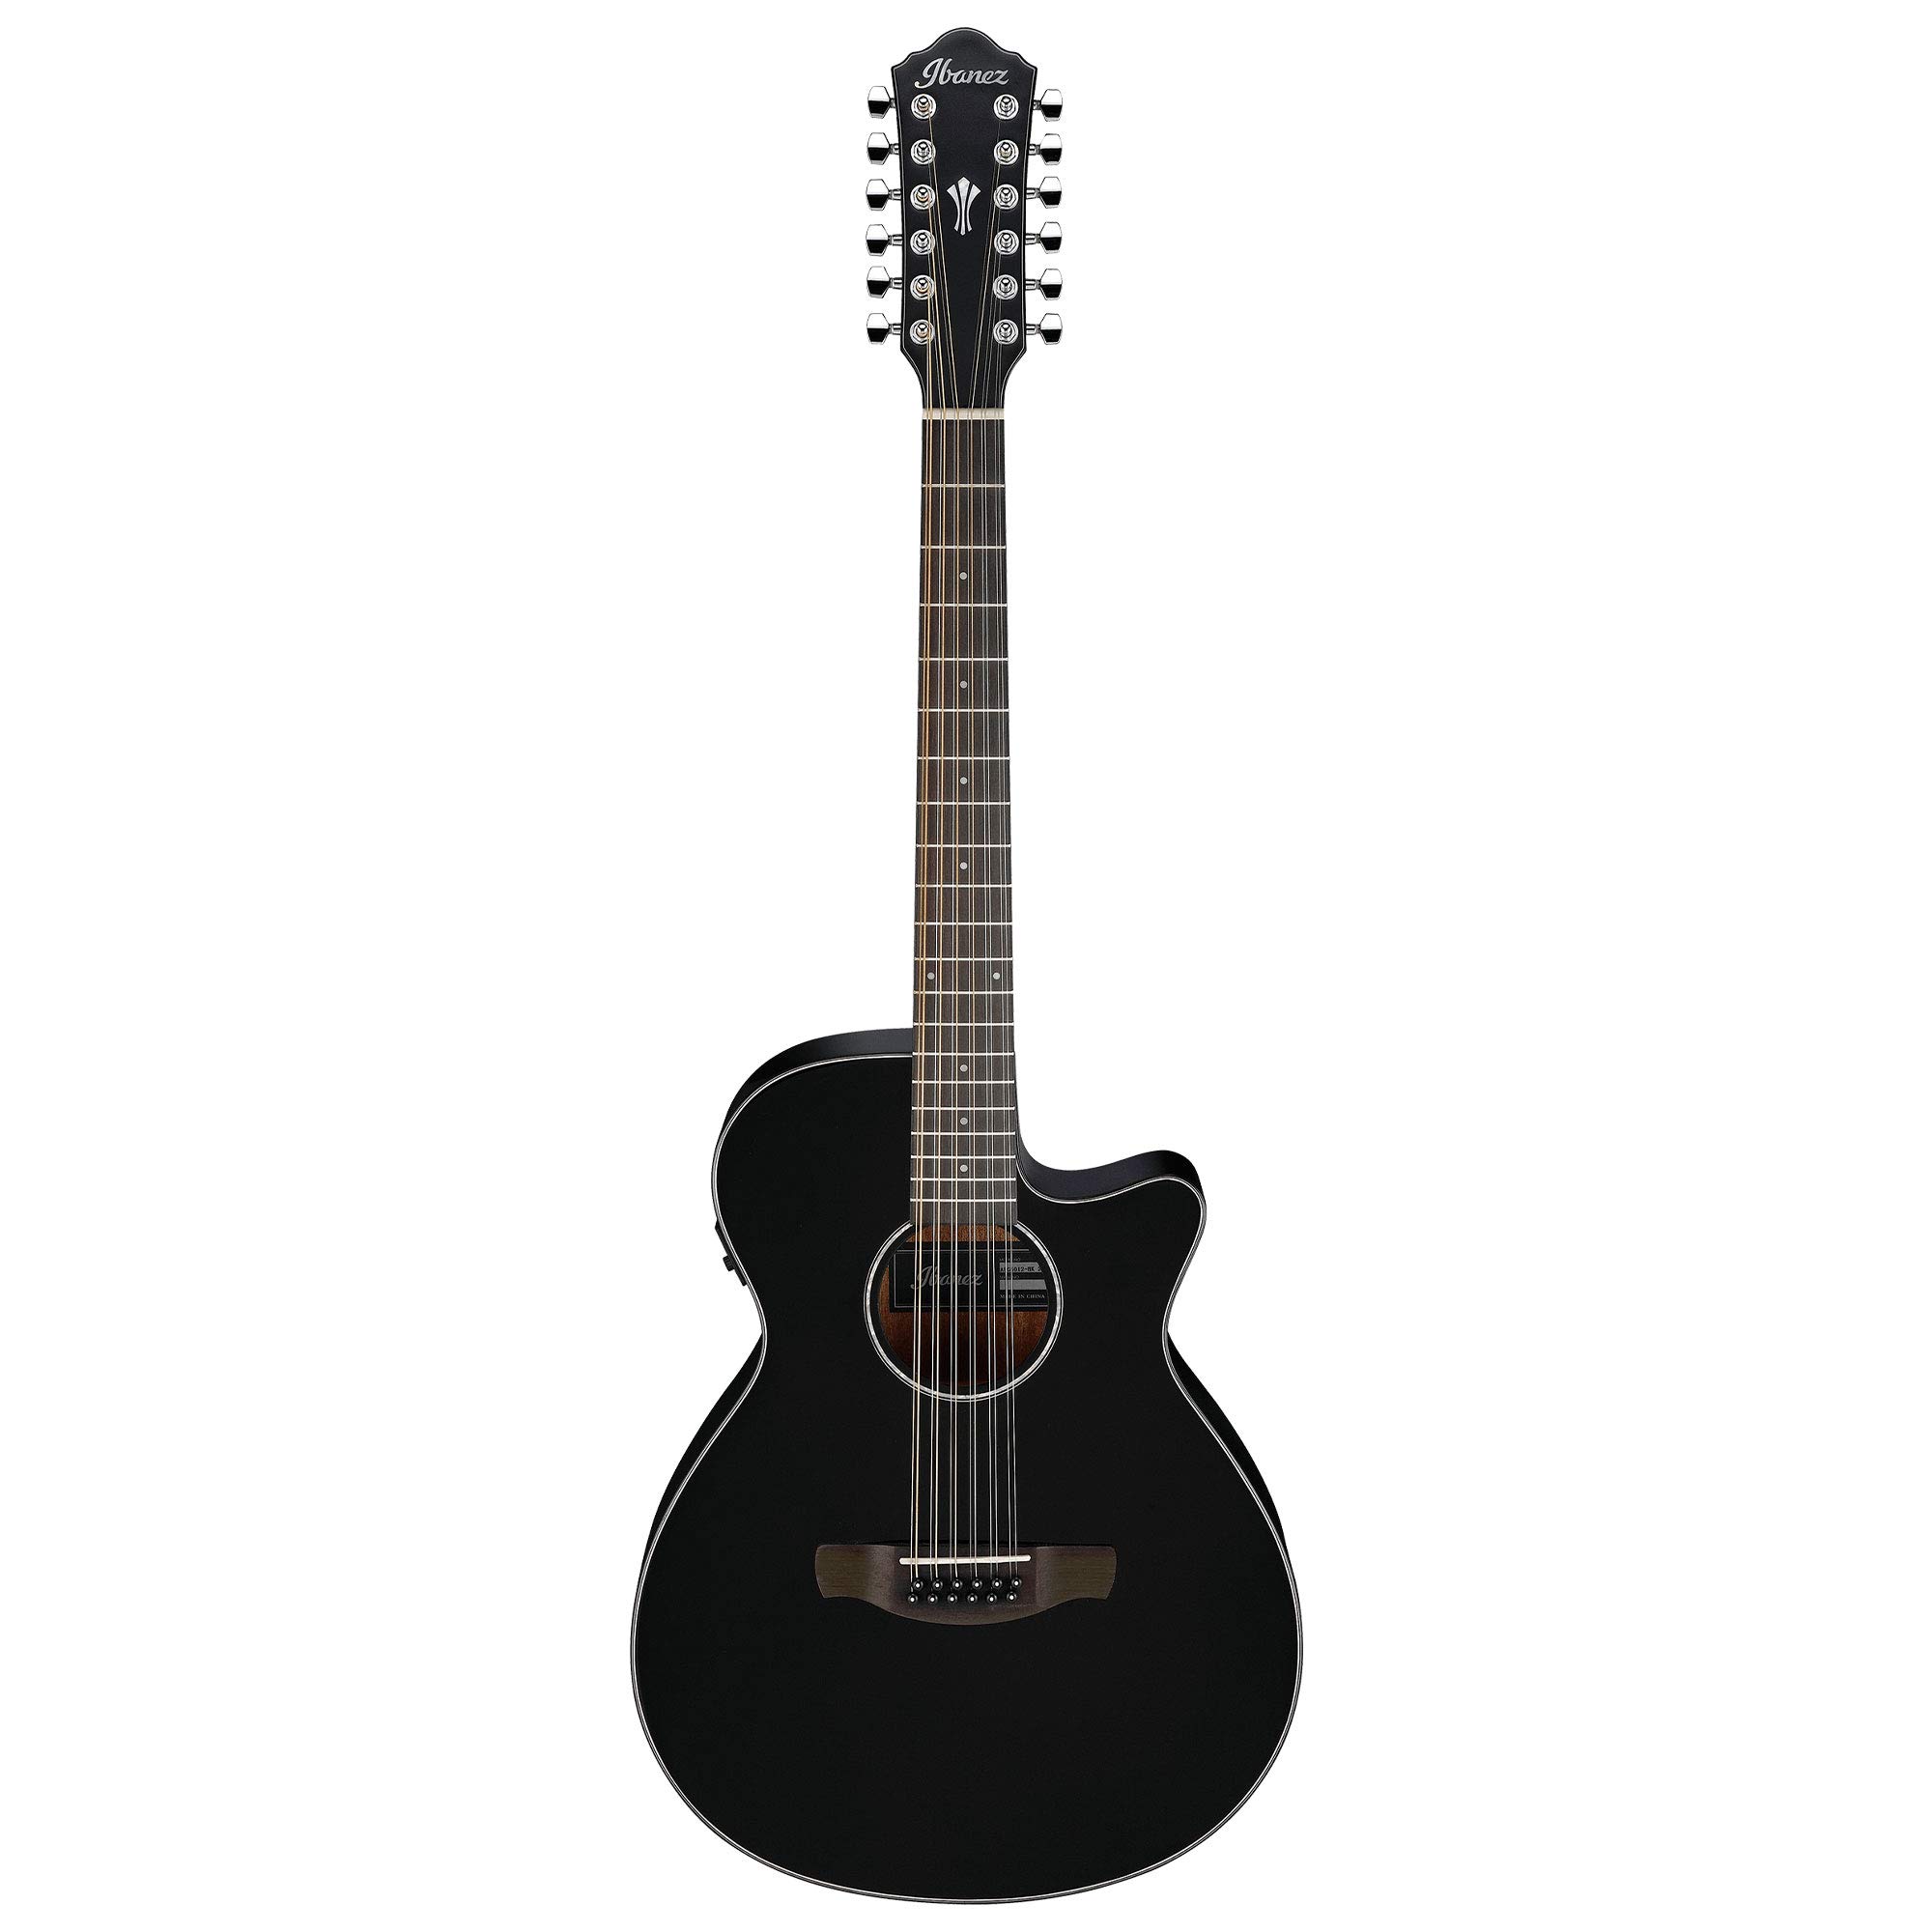 Ibanez AEG5012 AEG 系列单缺角 12 弦原声电吉他，黑色